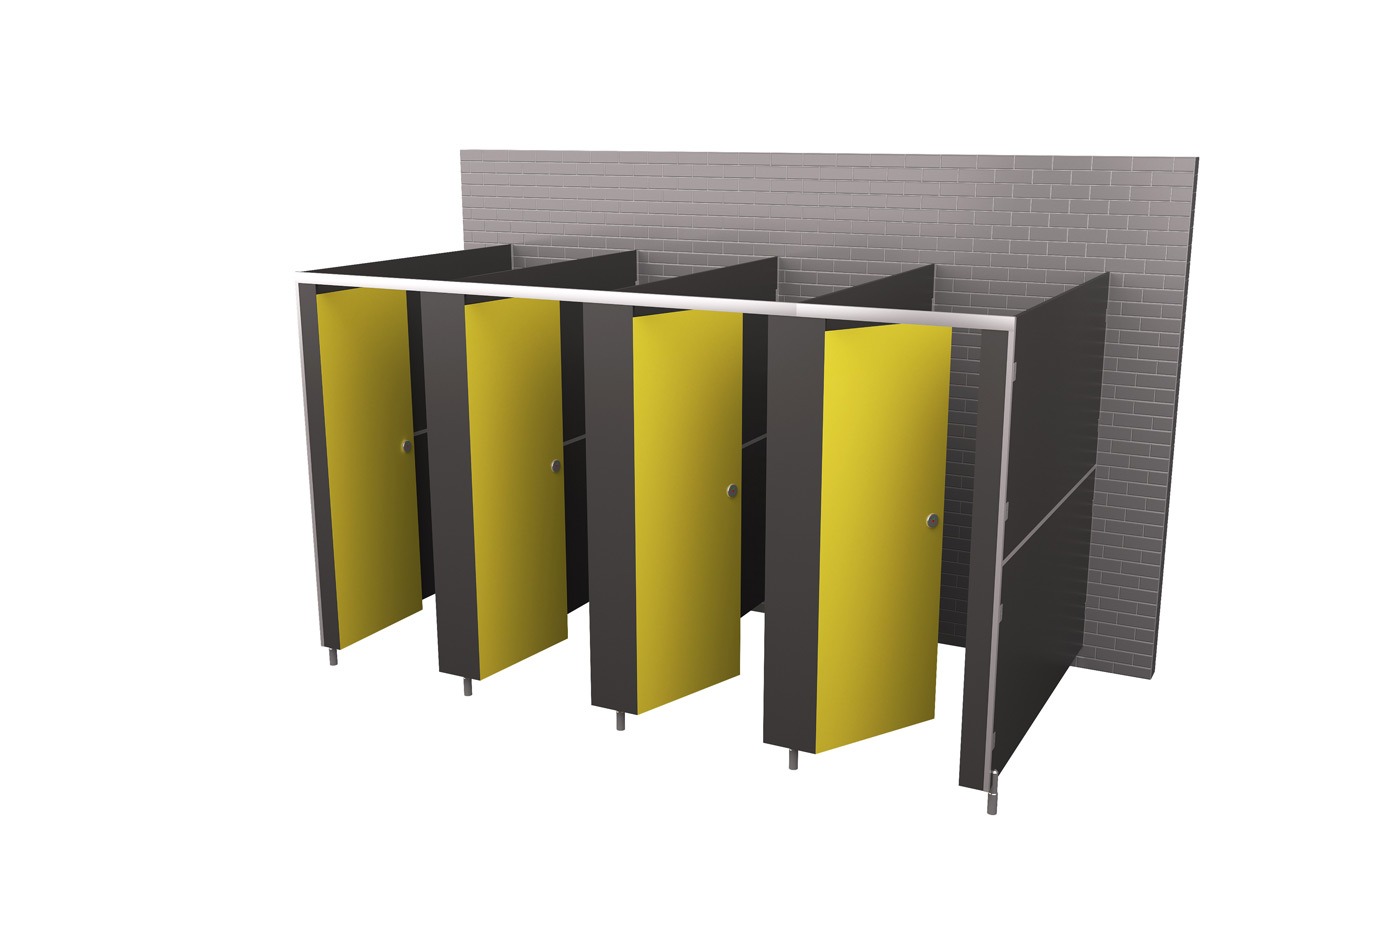 Set of four saffron yellow cubicles